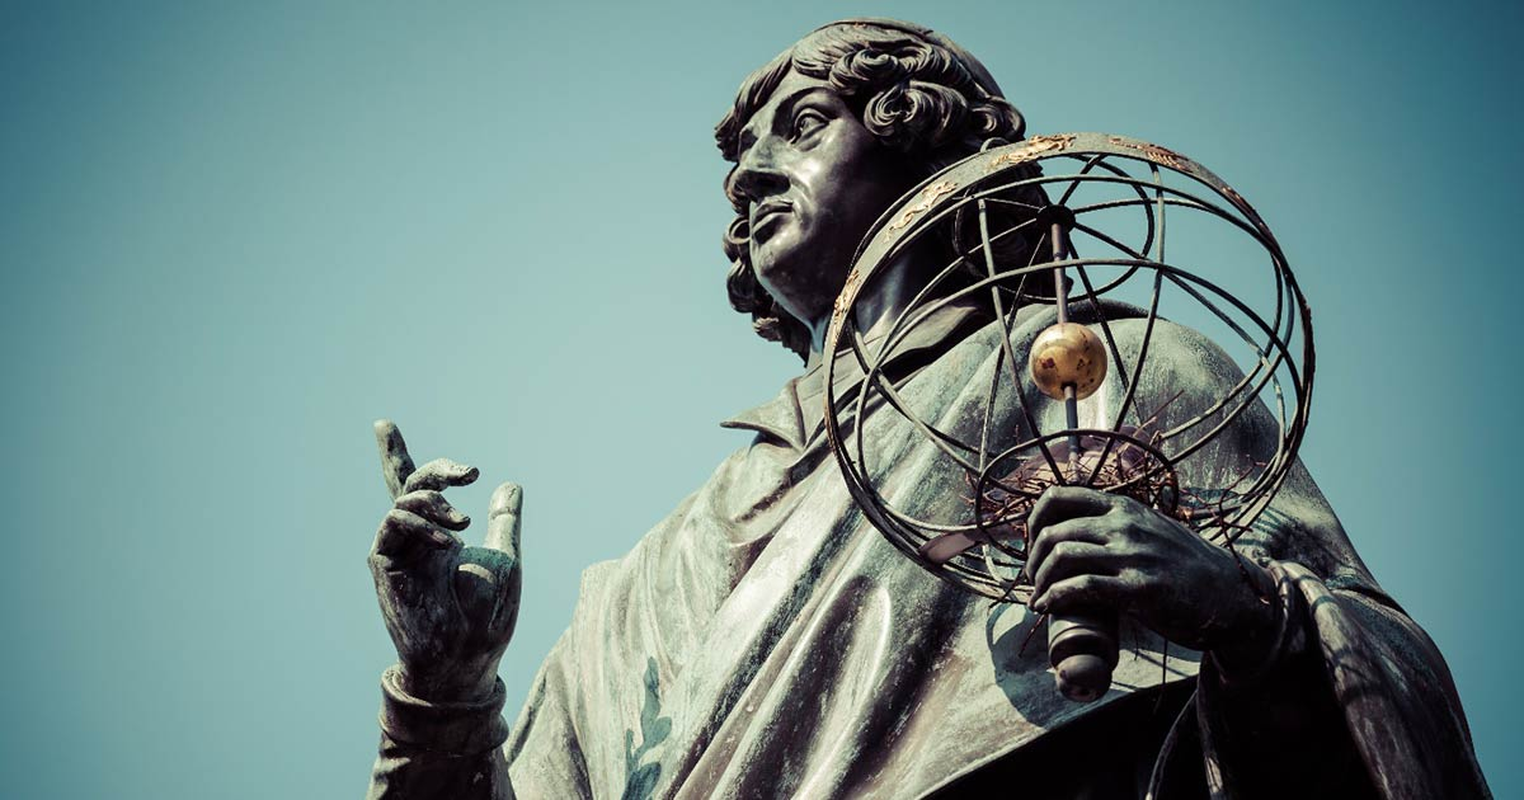 Ngoi mo bi an cua Nicolaus Copernicus khien gioi khoa hoc 'roi nao'-Hinh-2